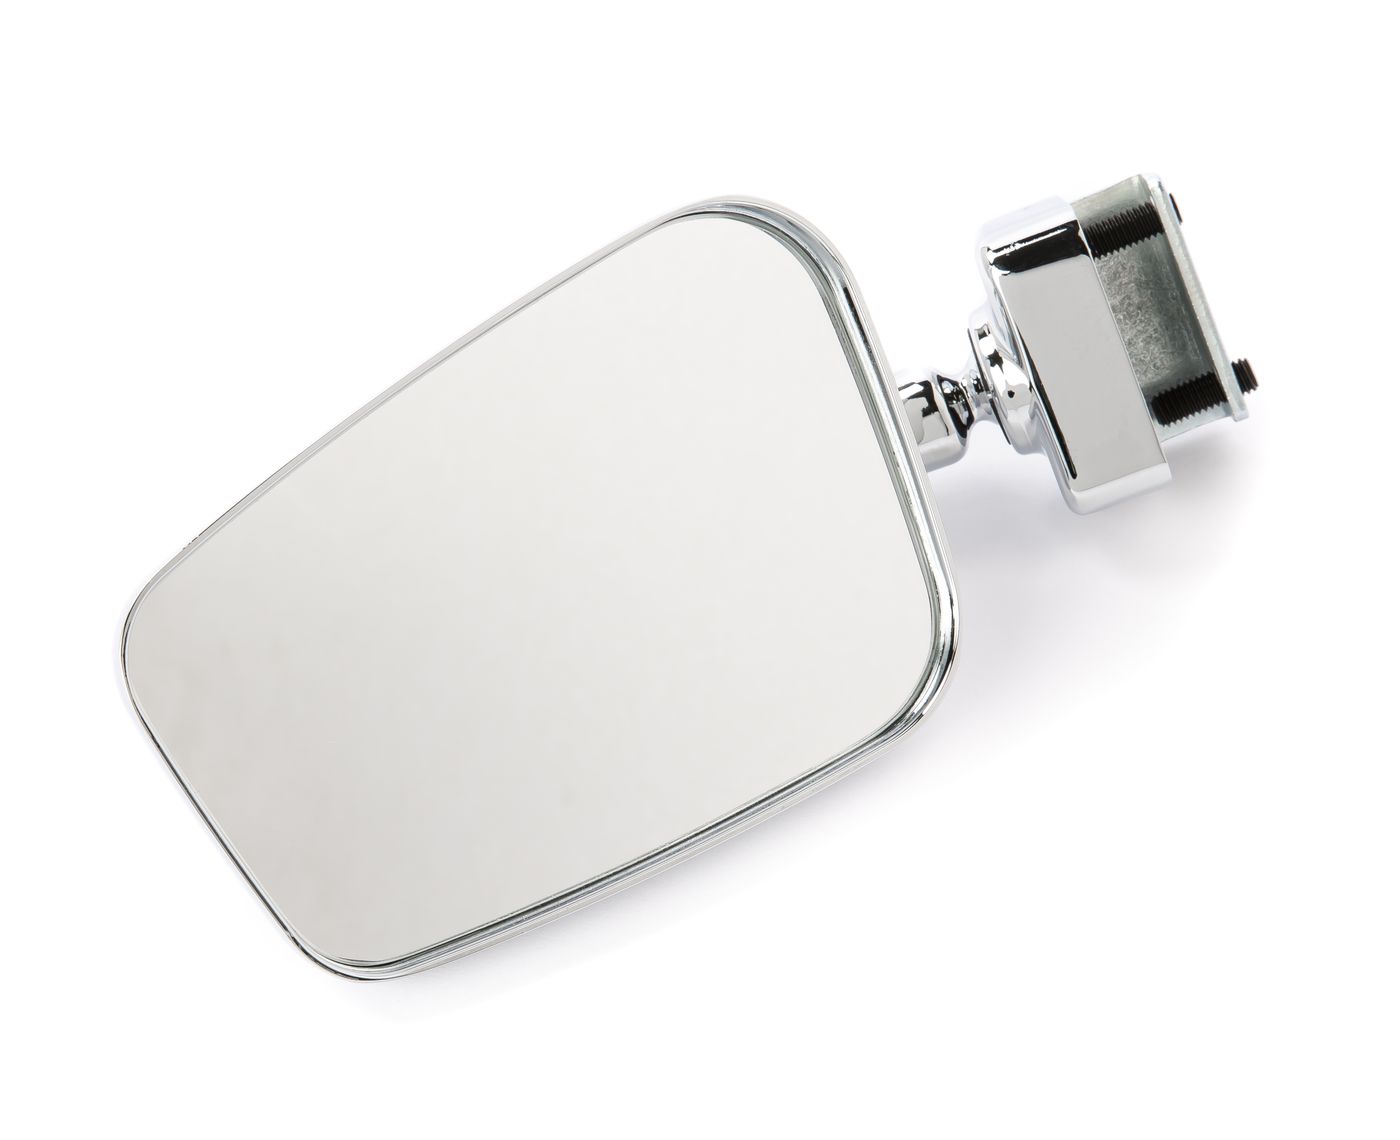 Klemmspiegel
Clamp-on mirror
Rétroviseur par serrage
Klemspiege